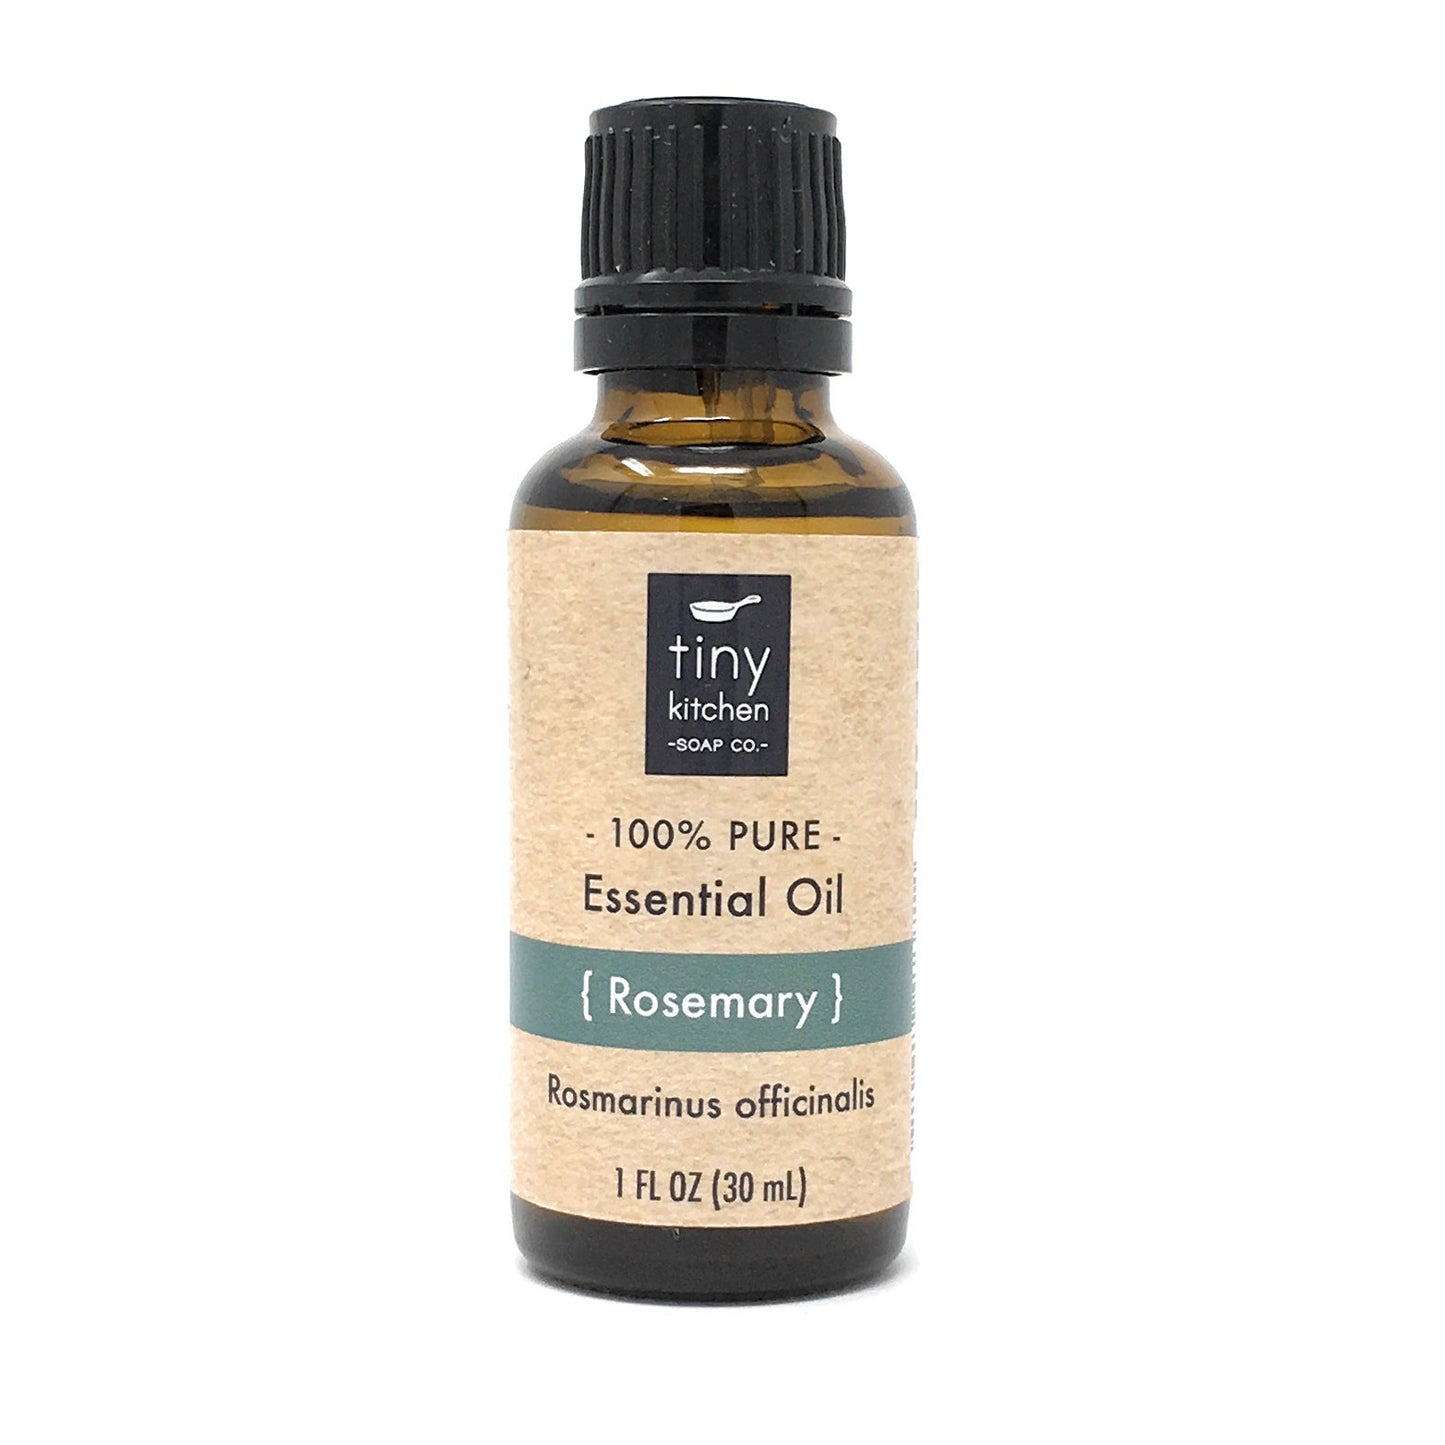 Pure Rosemary Essential Oil - Rosmarinus officinalis